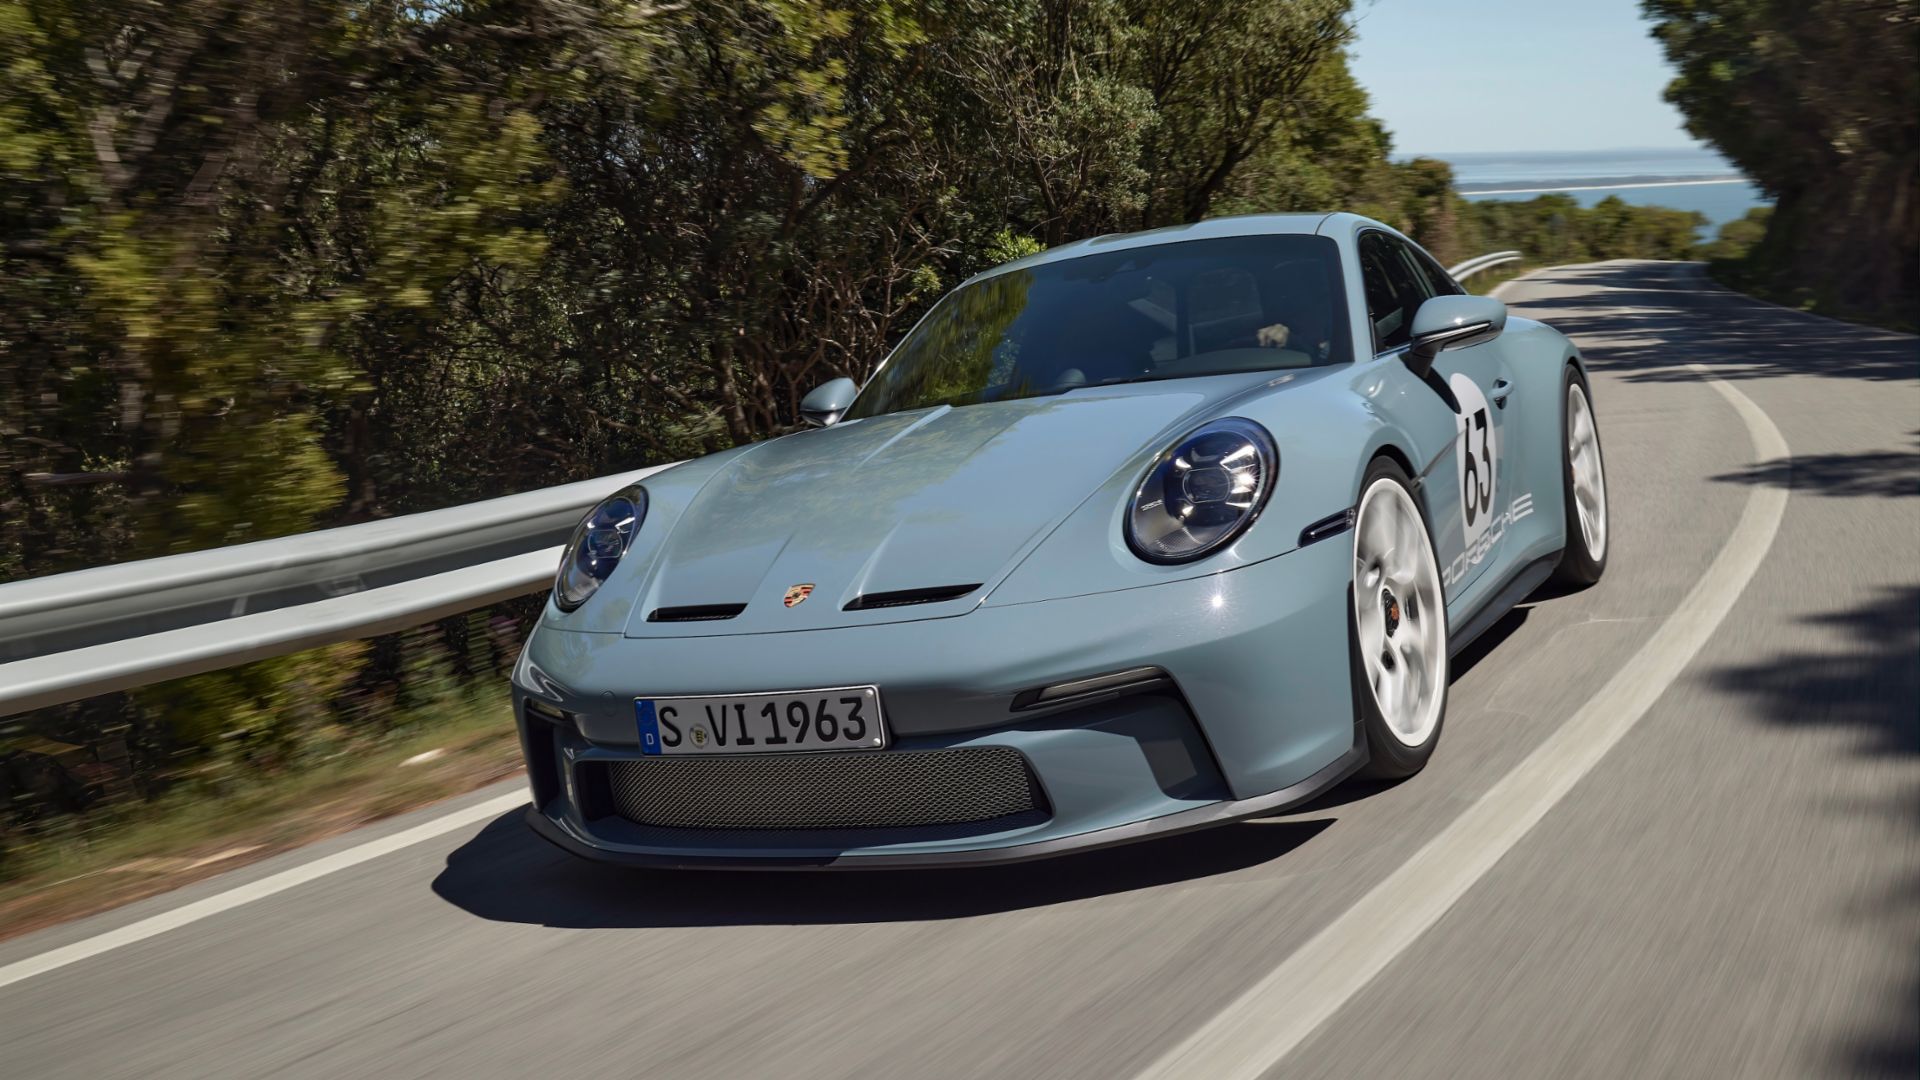 Περιττοί οι αγωνιστικοί αριθμοί στην Porsche 911 S/T 